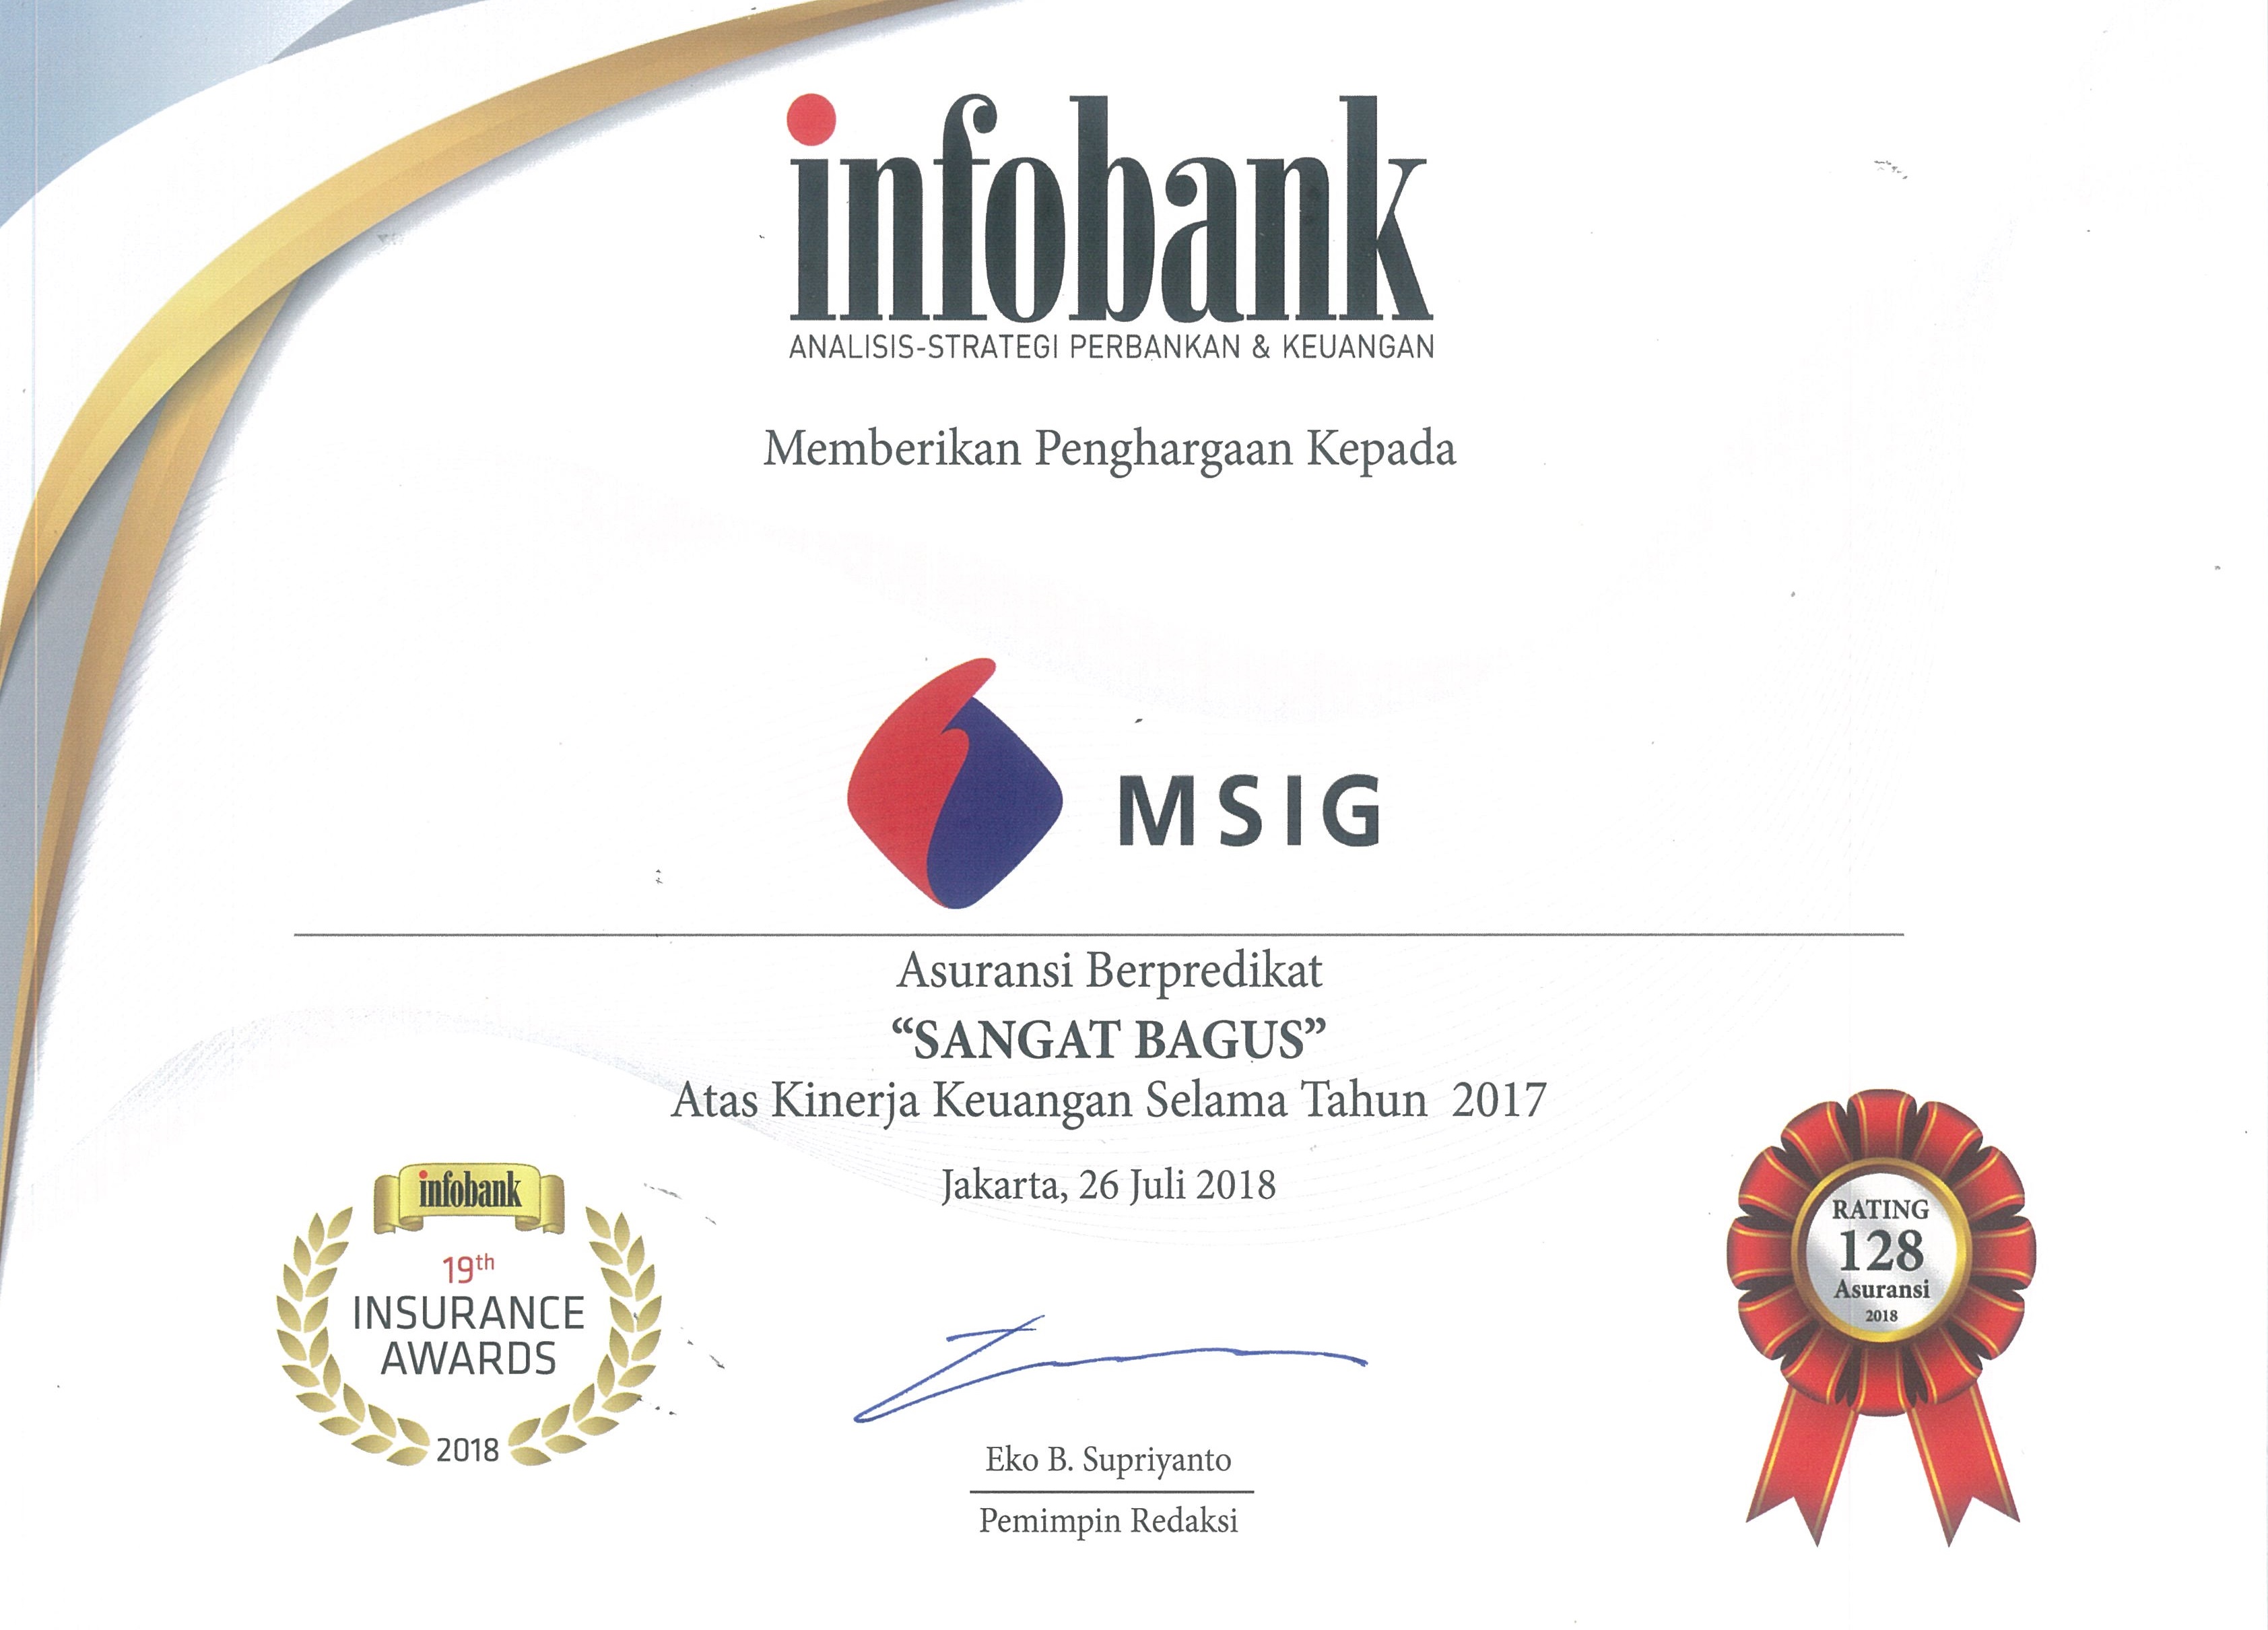 MSIG Indonesia Got Platinum Trophy at Infobank Awards 2018